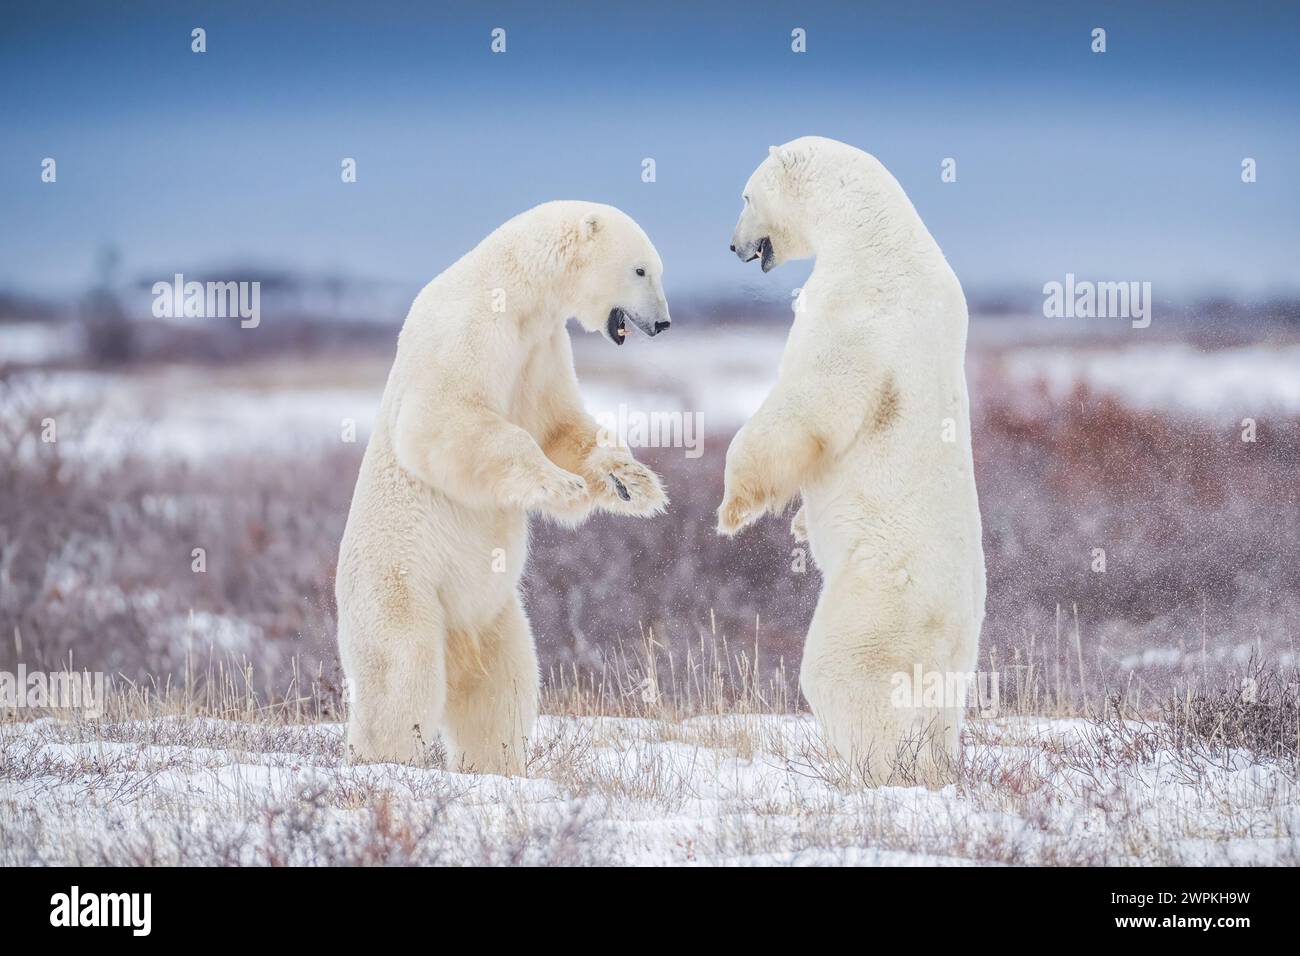 Jetzt umarmen wir KANADA ENTZÜCKENDE Bilder von zwei Eisbären, die miteinander spielen, werden dich zum Kichern bringen. Etwa zwei Jahre alt, diese Bärenschwestern Stockfoto